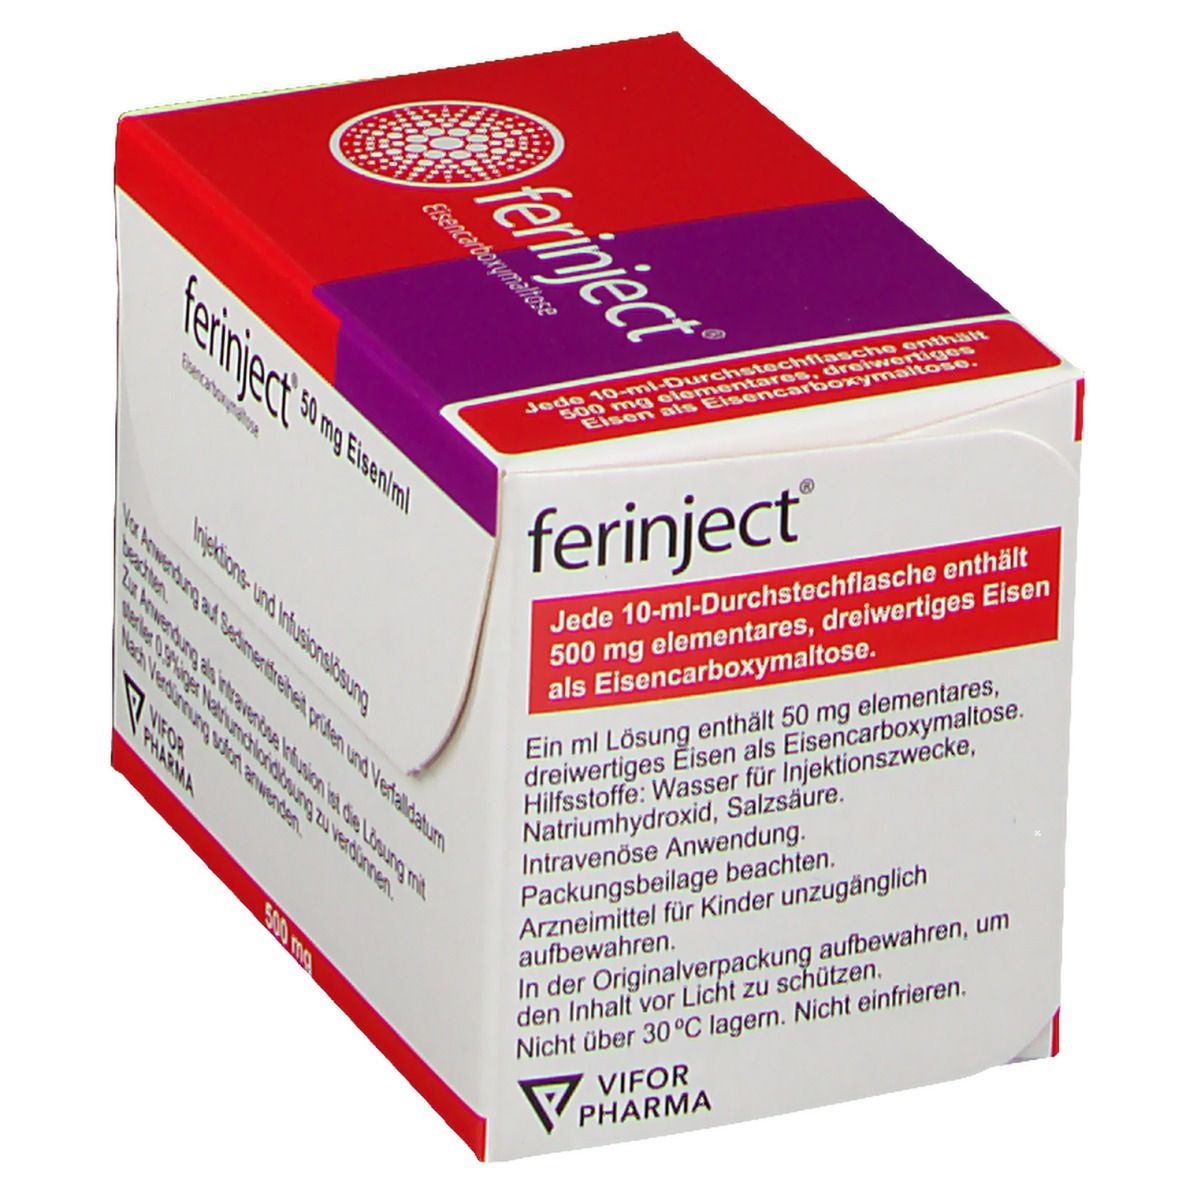 ferinject® 50 mg